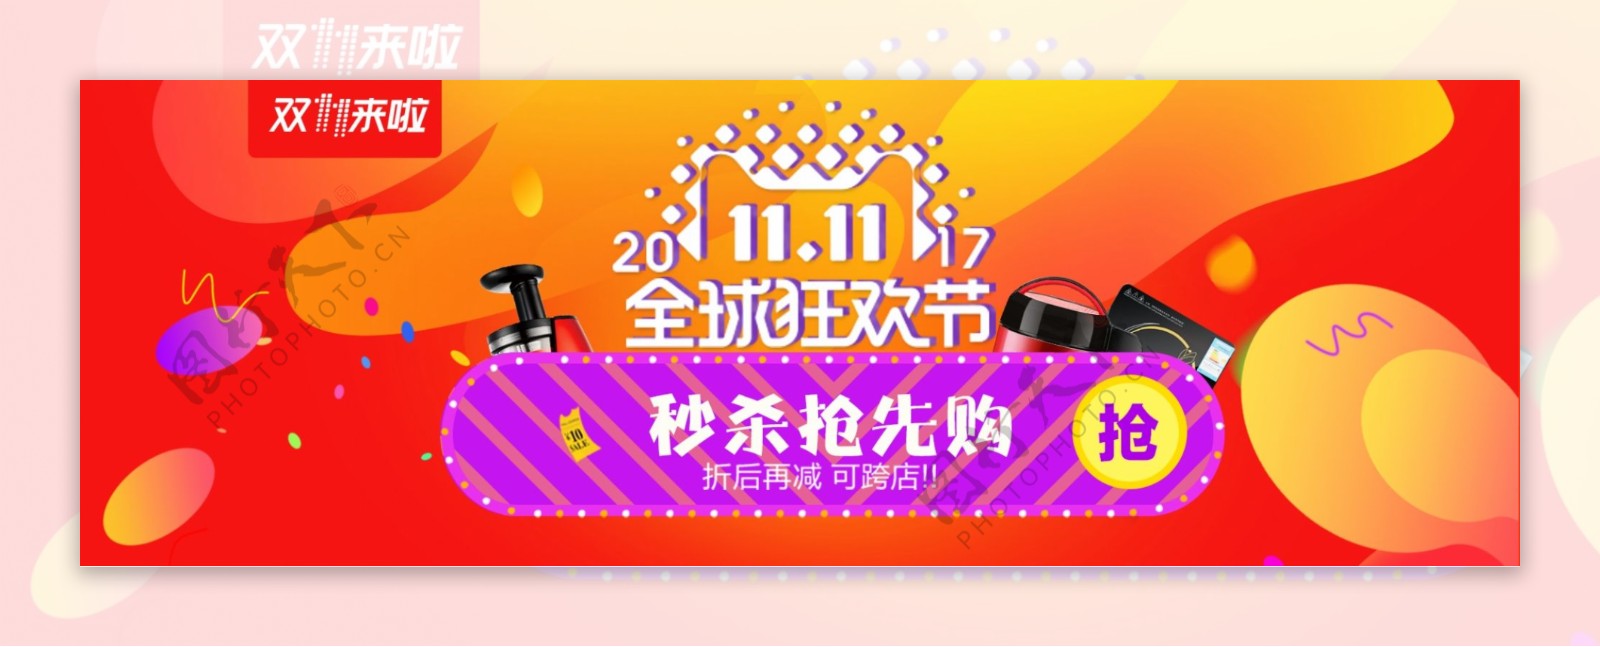 炫彩时尚2017双11抢先购特惠电商海报banner双十一